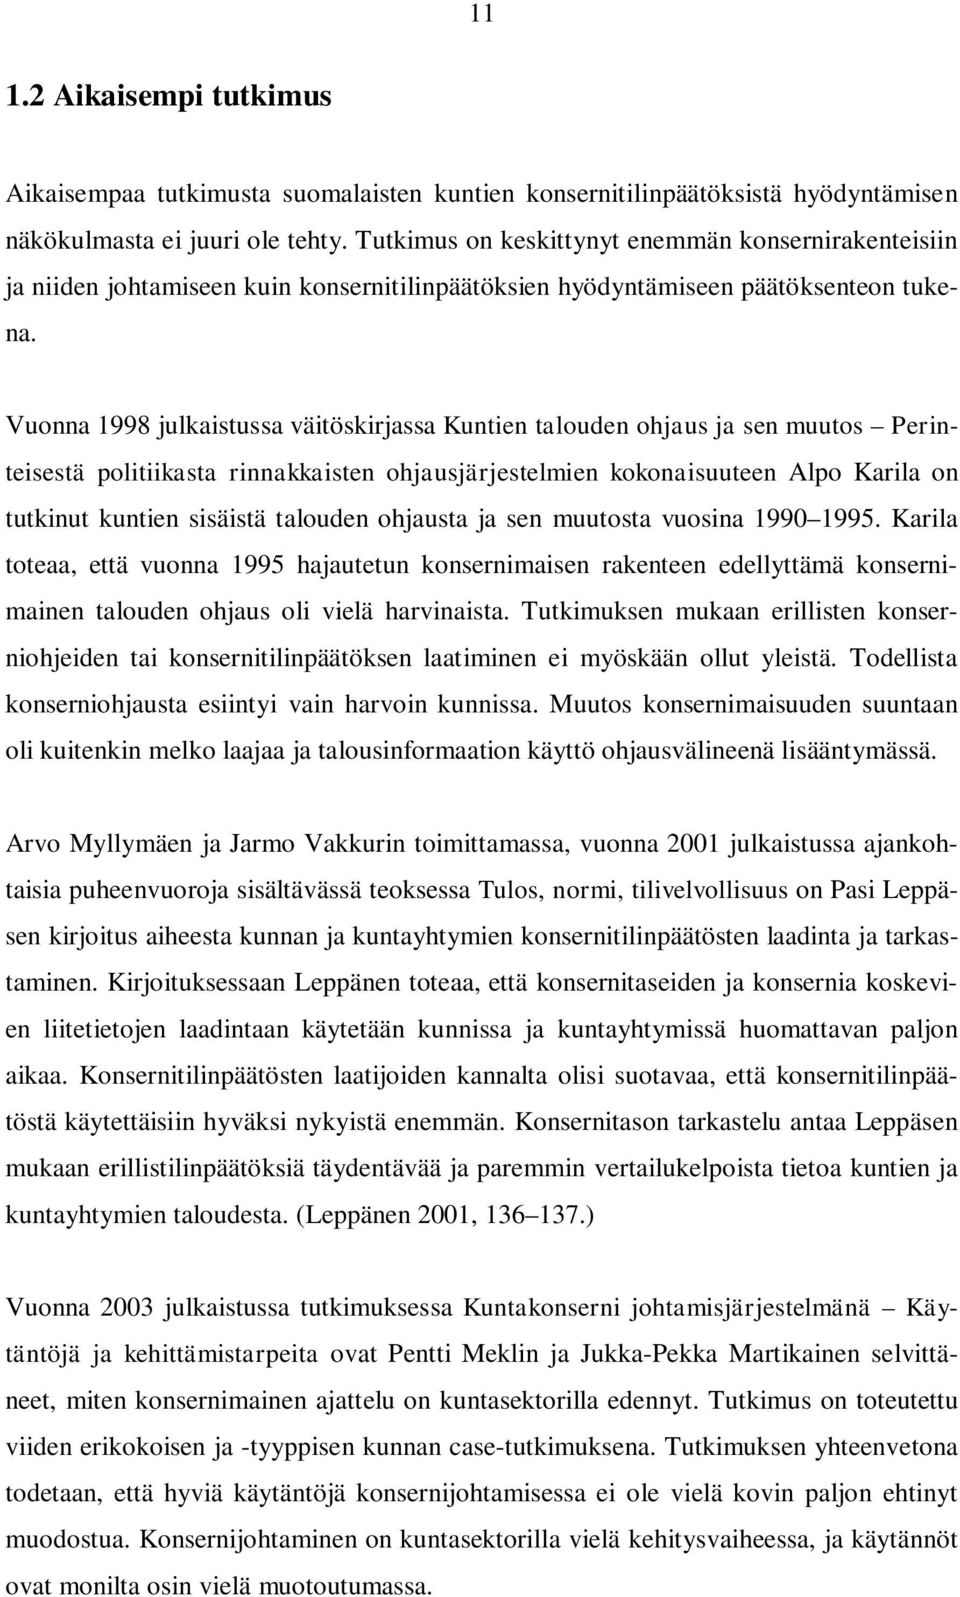 Vuonna 1998 julkaistussa väitöskirjassa Kuntien talouden ohjaus ja sen muutos Perinteisestä politiikasta rinnakkaisten ohjausjärjestelmien kokonaisuuteen Alpo Karila on tutkinut kuntien sisäistä